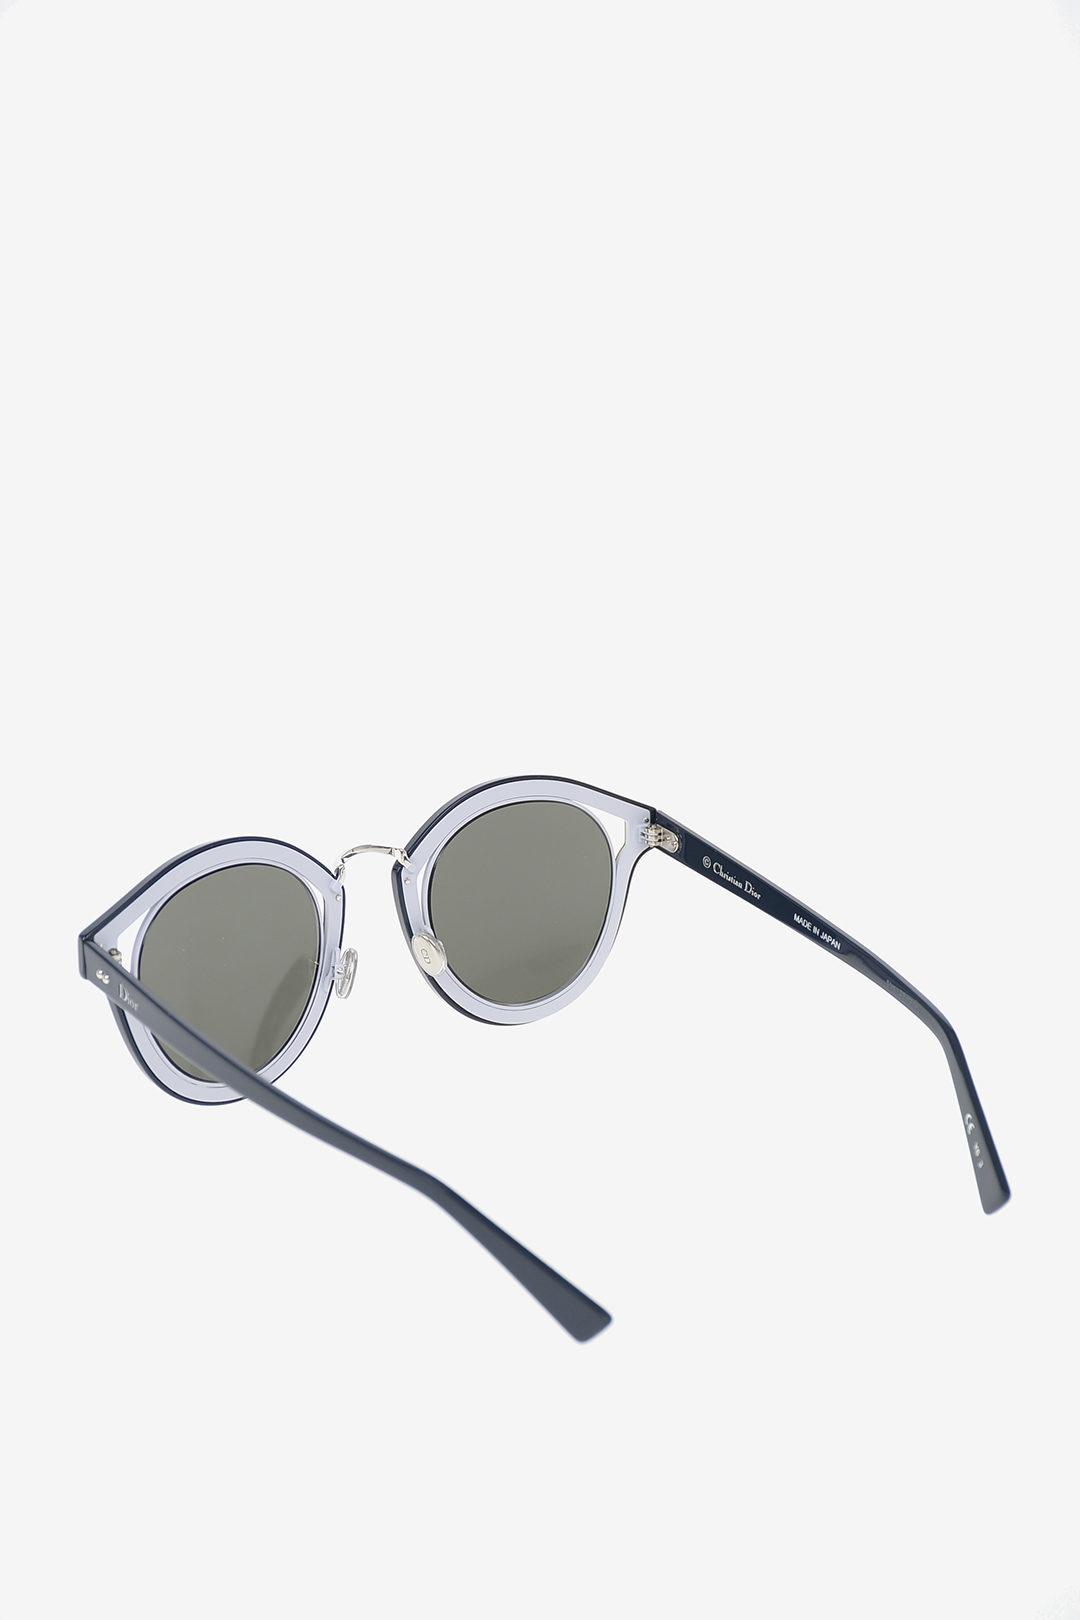 Dior Silver Mirrored Sunglasses for Women for sale  eBay